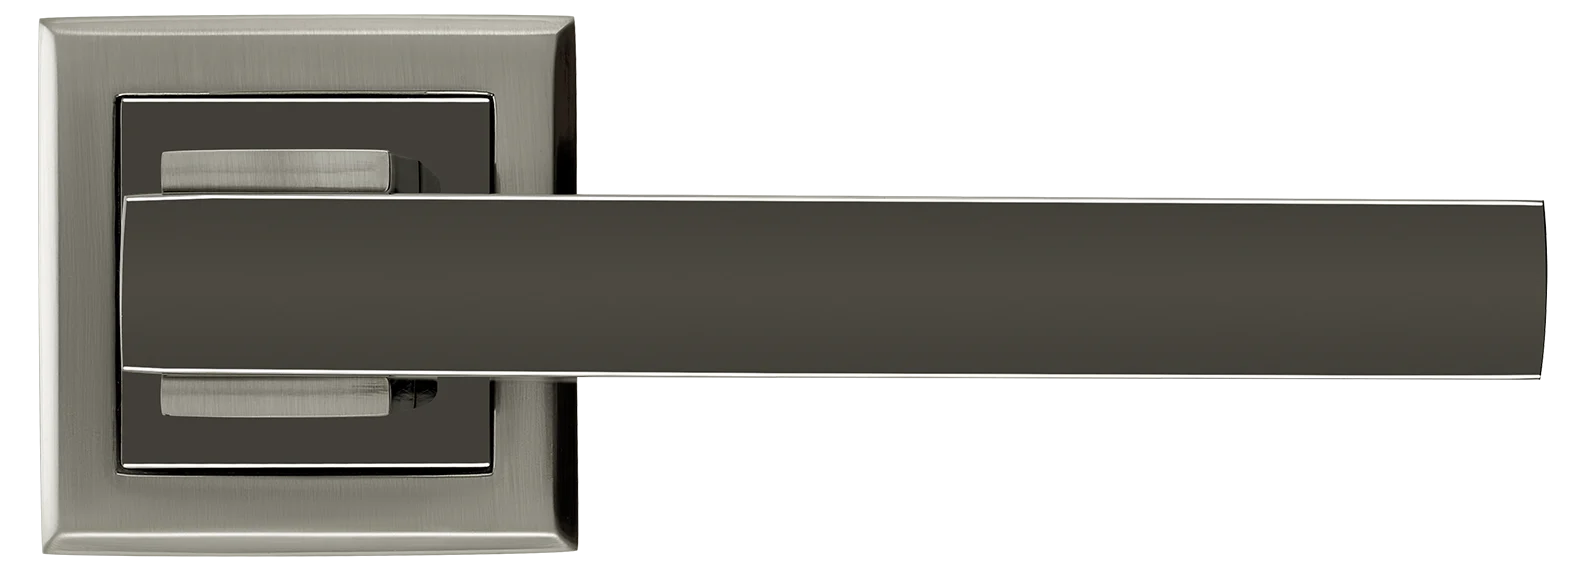 PIQUADRO, ручка дверная MH-37 SN/BN-S, на квадратной накладке, цвет - бел. никель/черн. никель фото купить в СПб